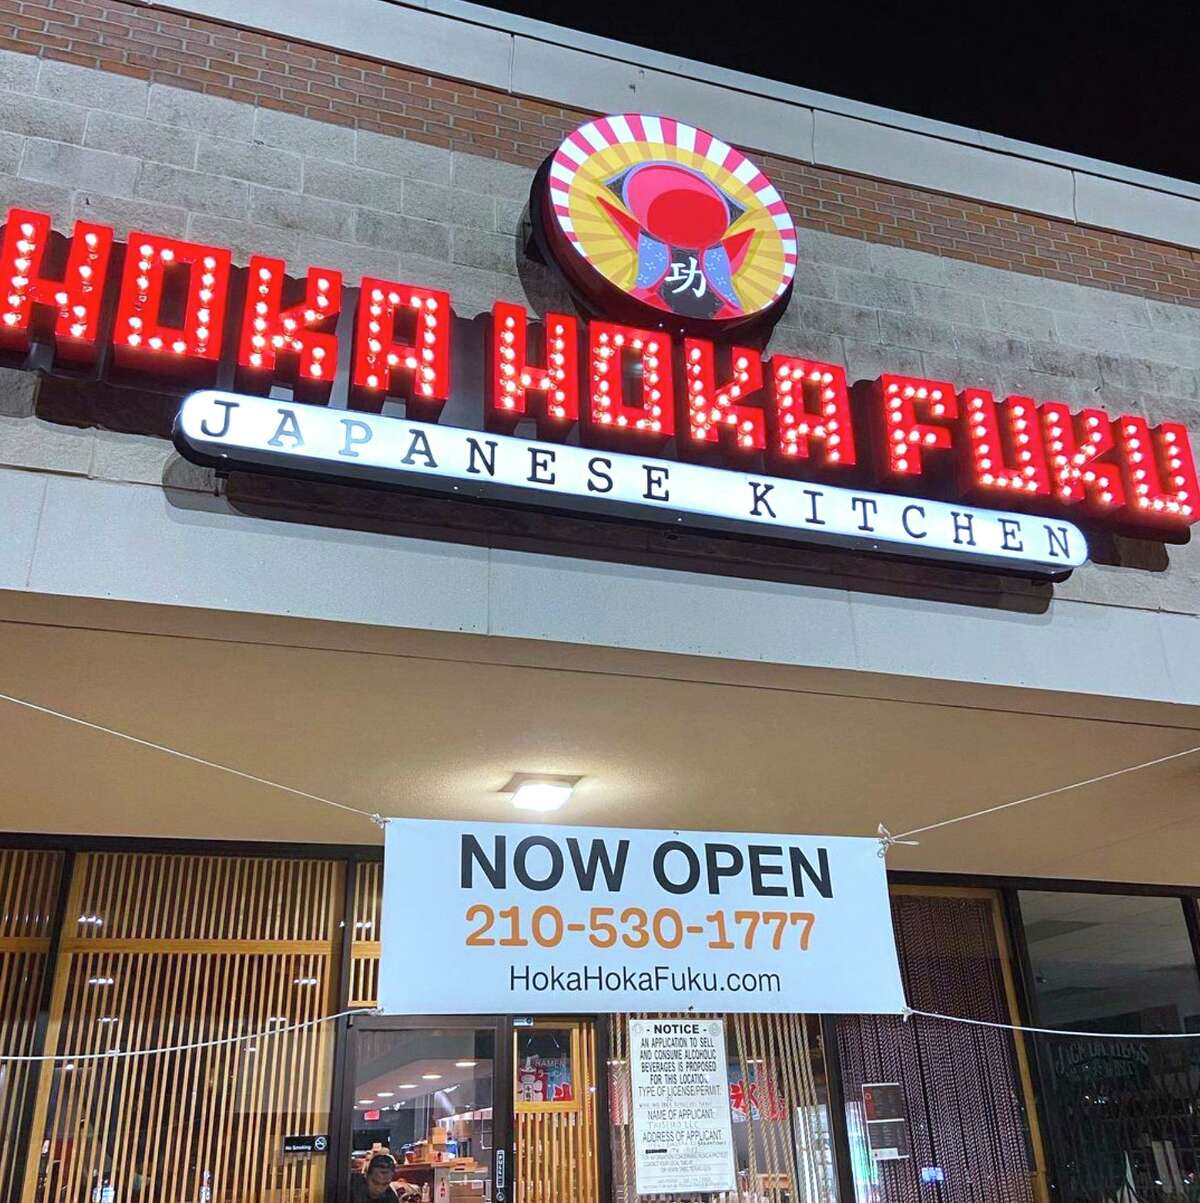 Hoka Hoka Fuku, a Japanese restaurant specializing in ramen, katsu and udon, has opened on Bandera Road in San Antonio near Helotes.